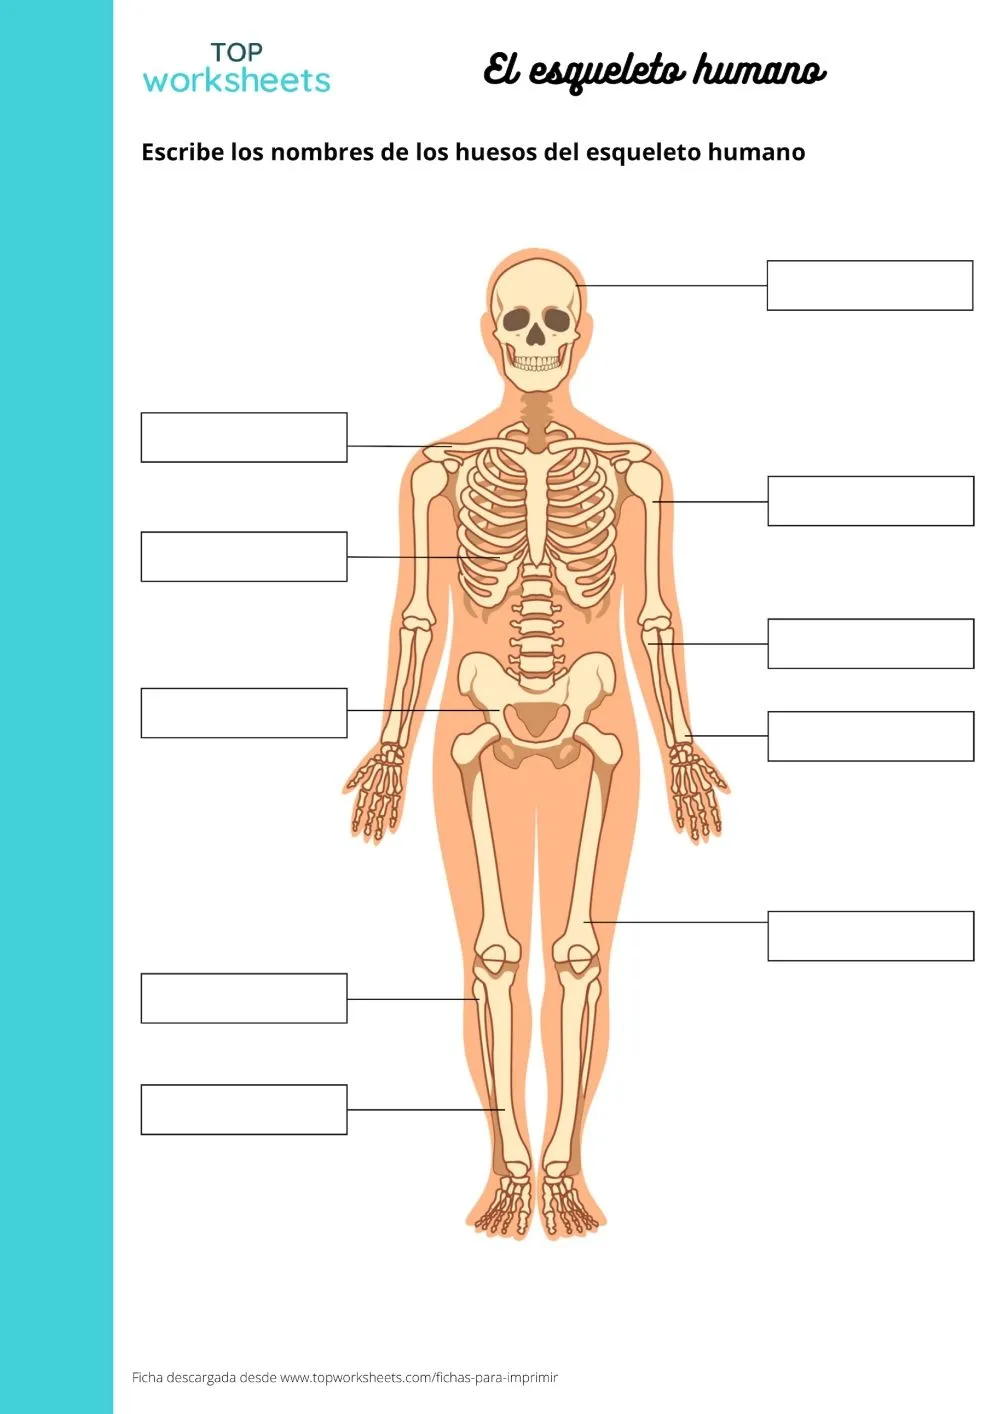 El esqueleto humano, printable worksheet | TopWorksheets